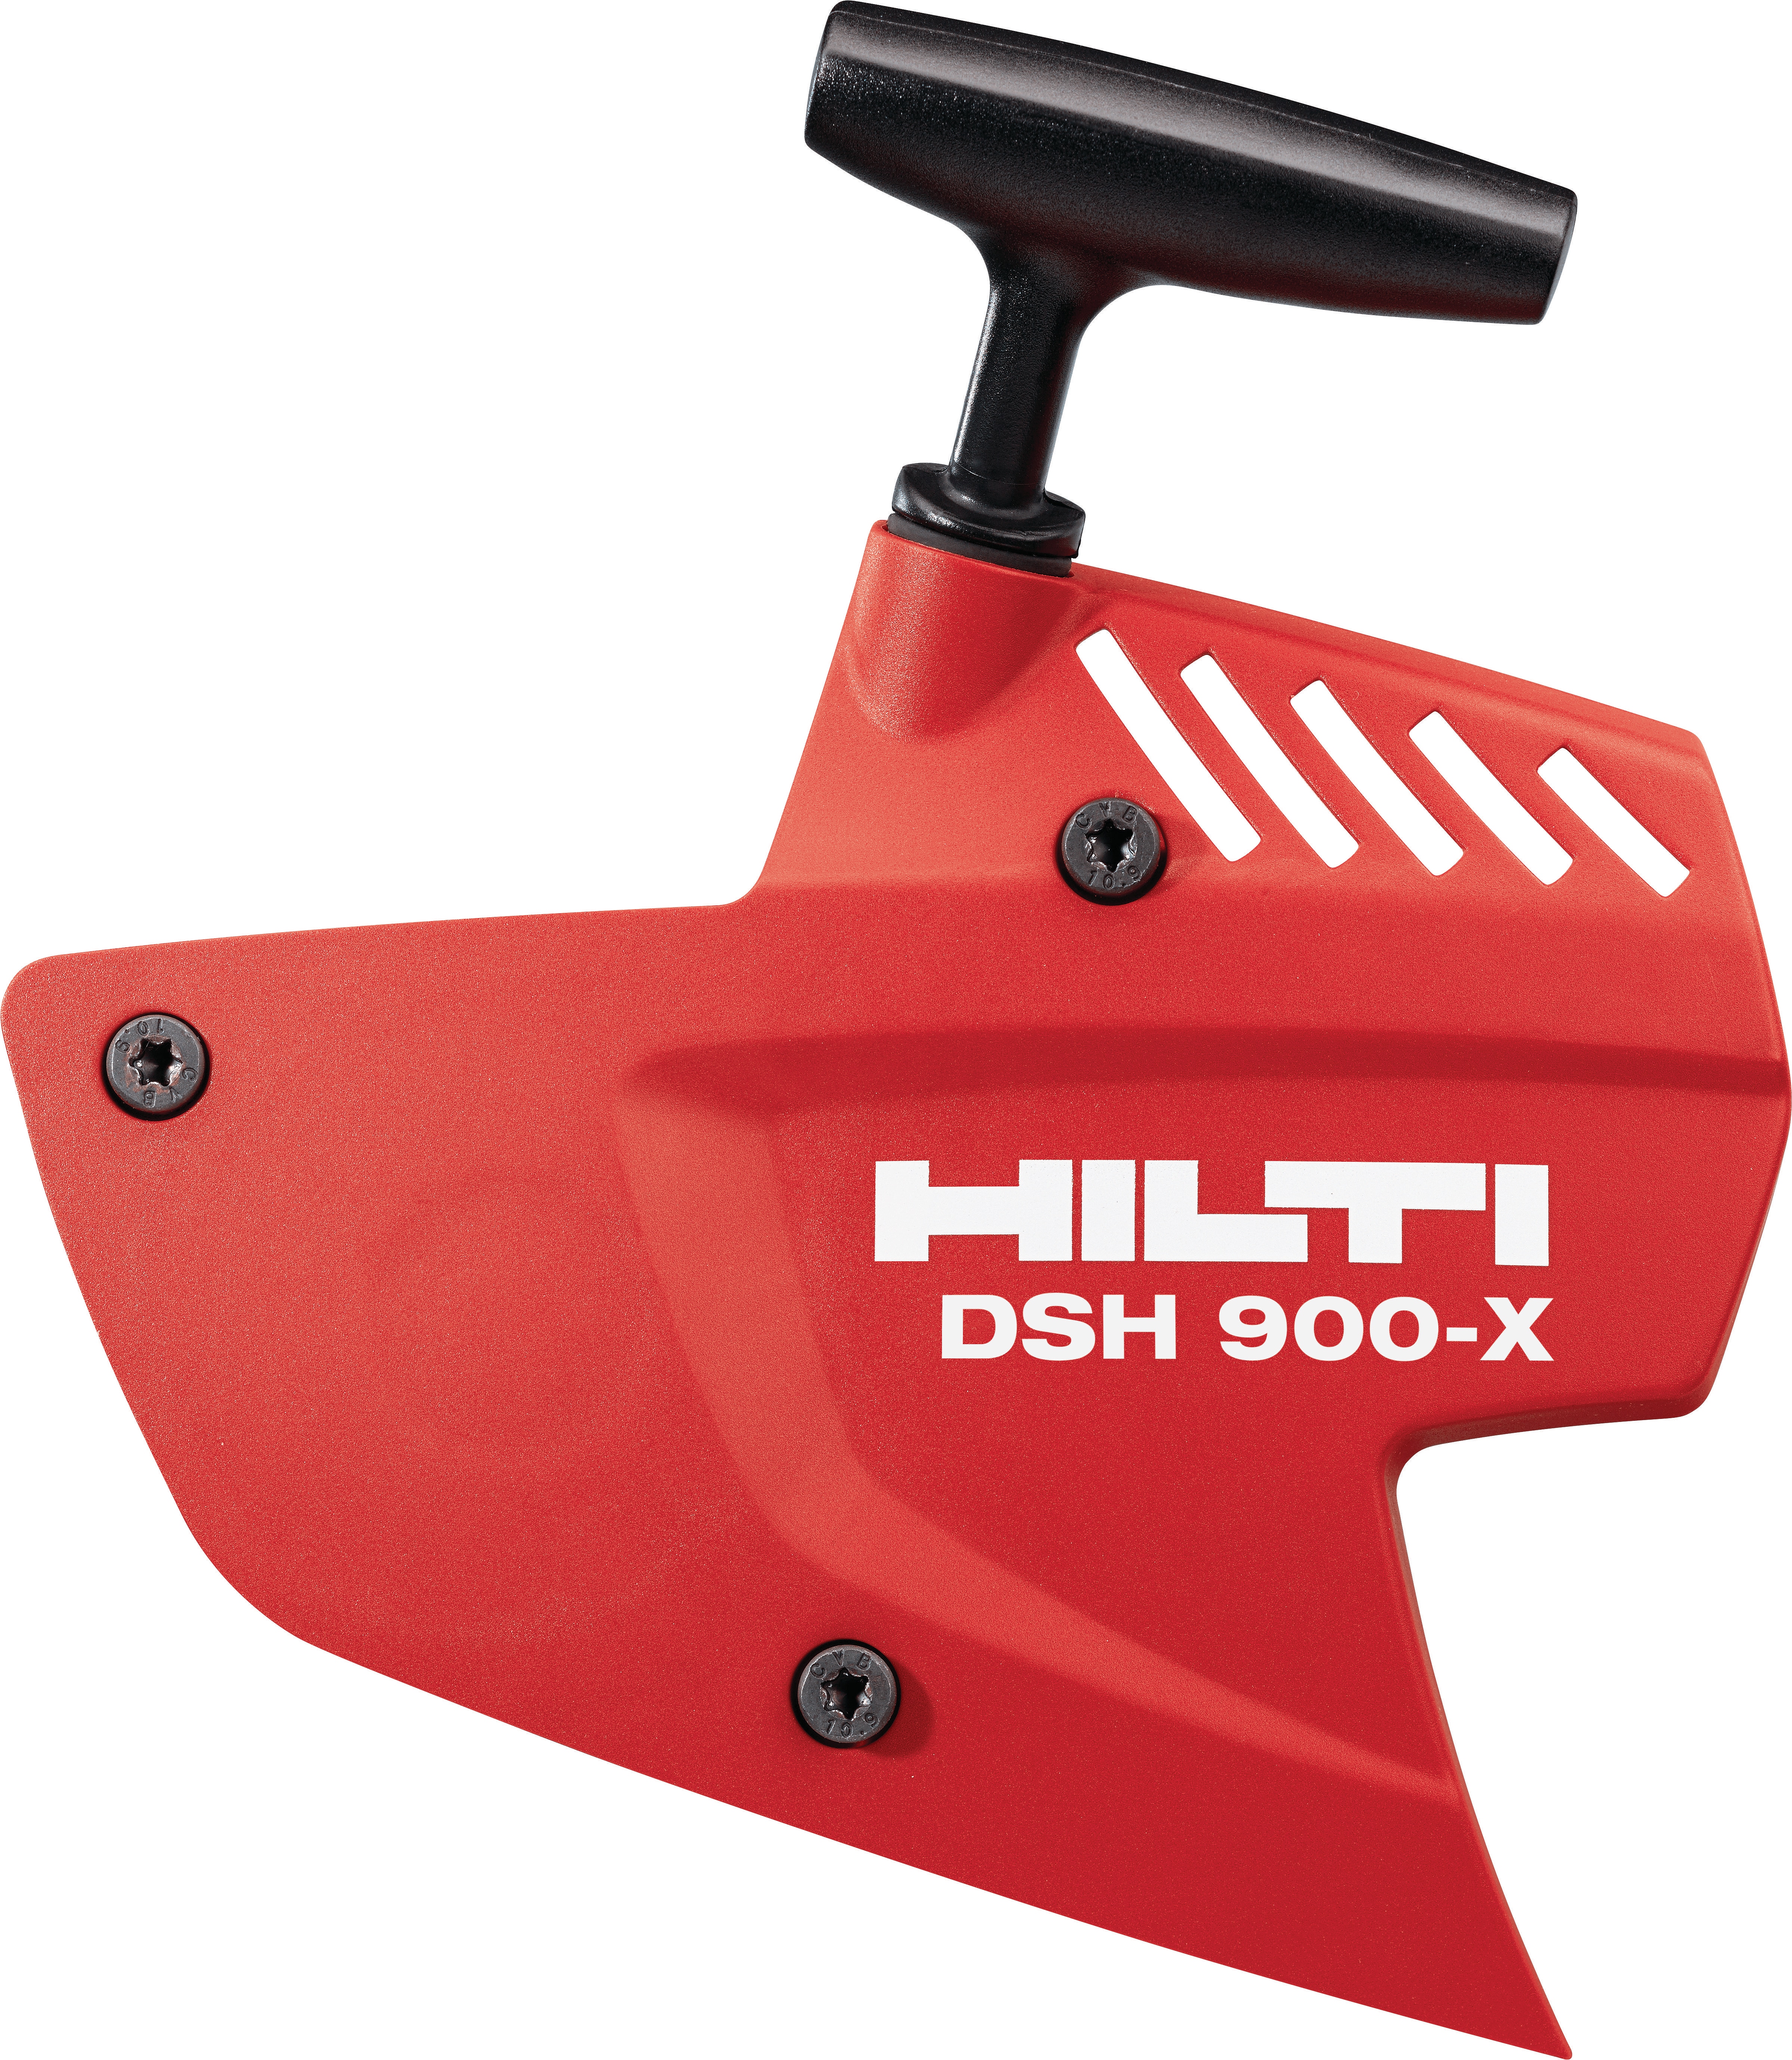 Starter DSH 900-X - Accessories for concrete saws - Hilti Canada